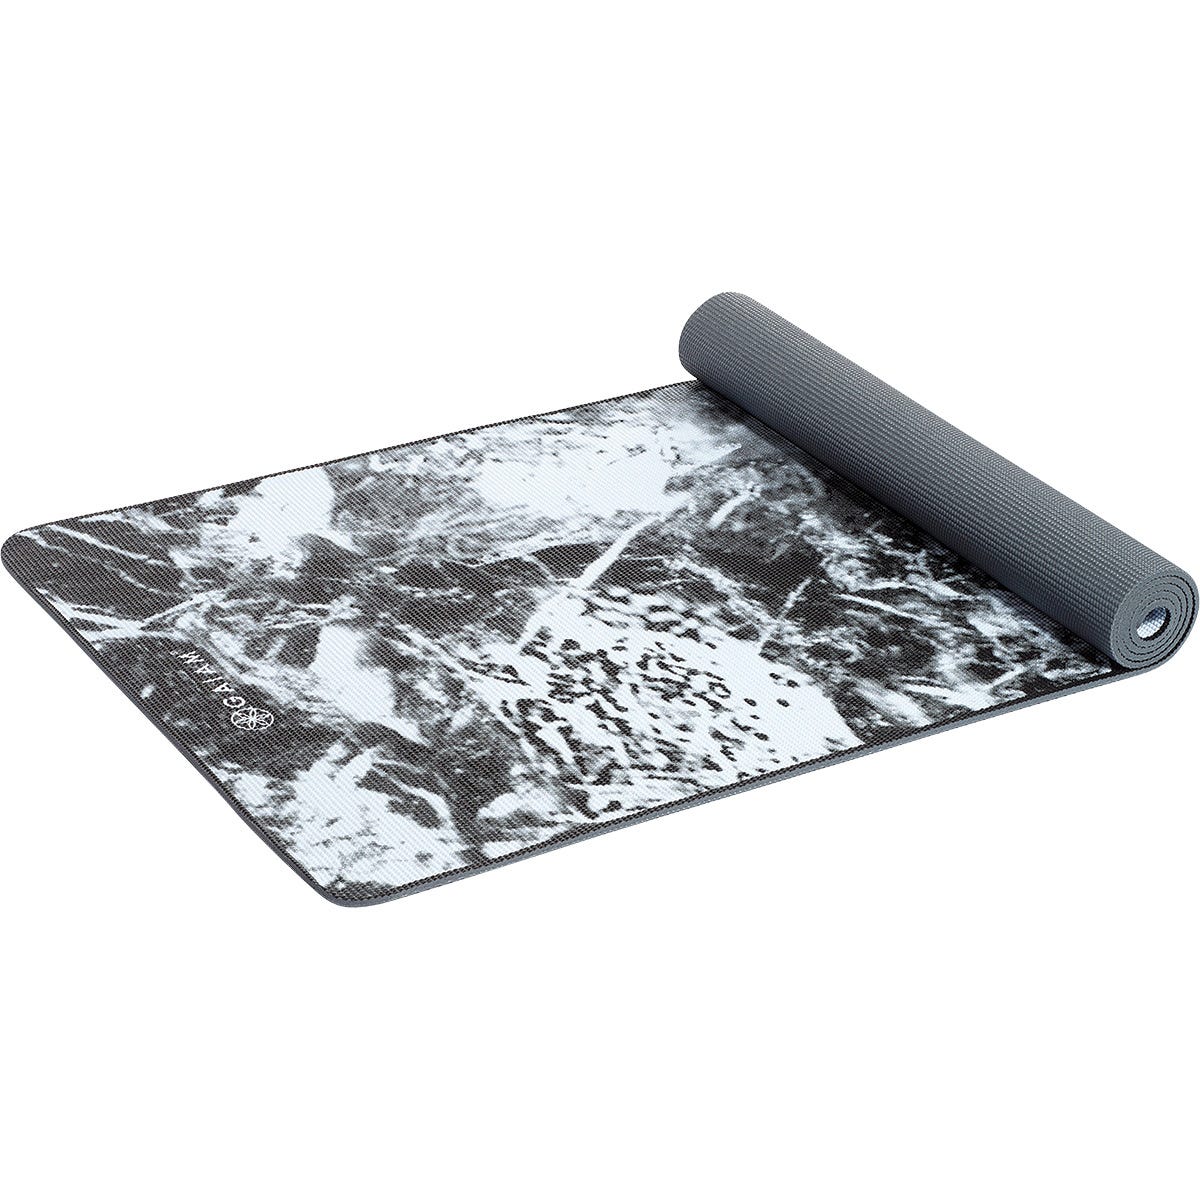 Gaiam Yoga Mat Premium Support 6mm Dark Marble 61cm x 173cm